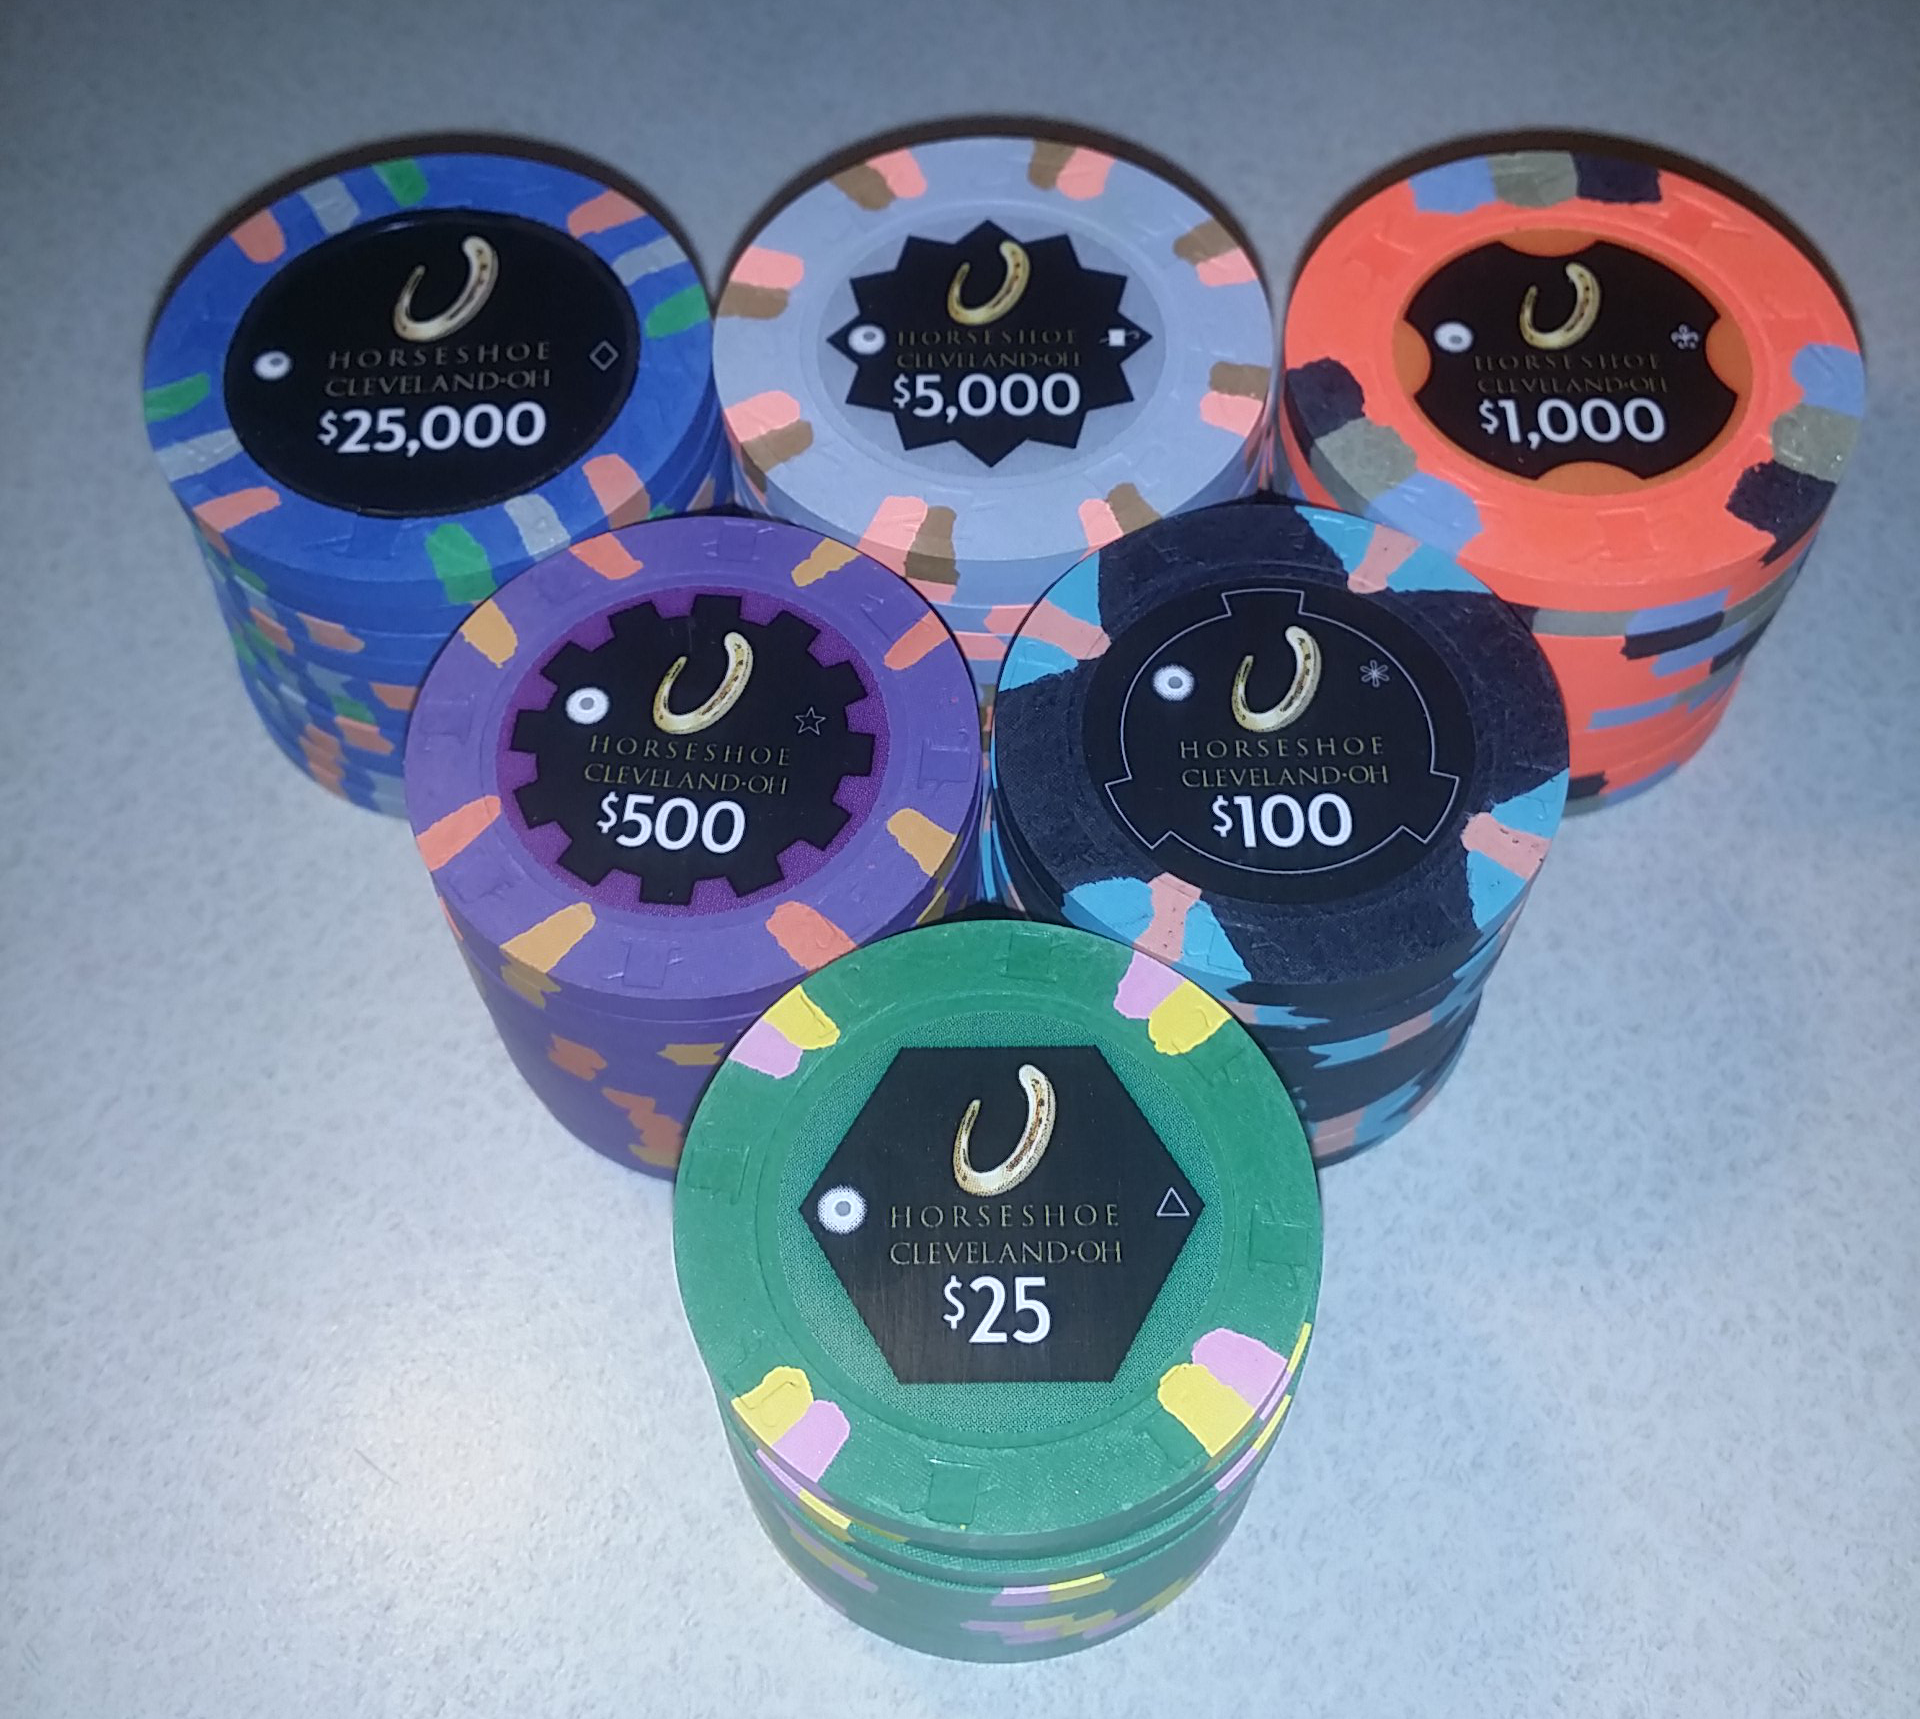 Horseshoe Casino Cleveland Chips